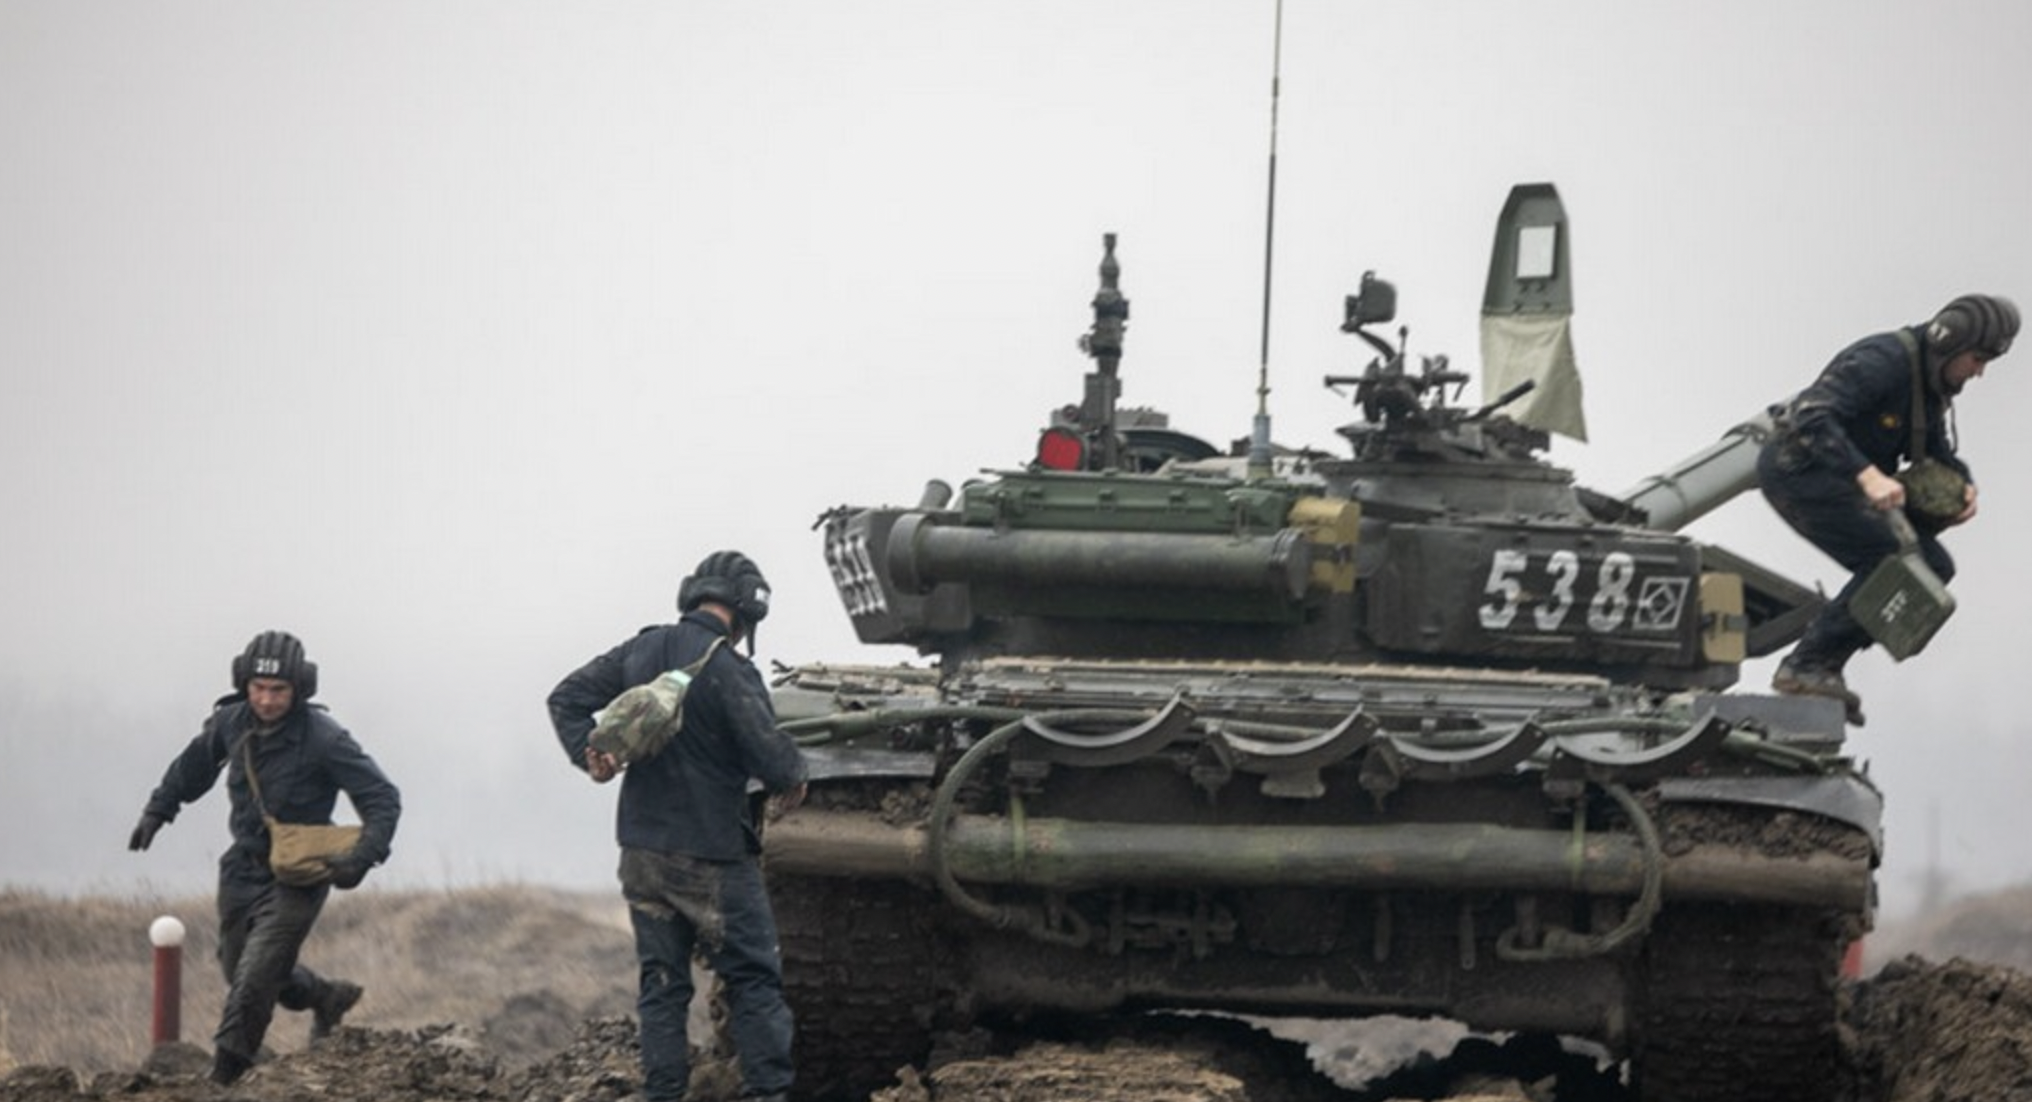 Επέμβαση στην Ουκρανία: Οι αναλυτές εκτιμούν ότι «η Ρωσία μπορεί να αντέξει έναν μακροχρόνιο πόλεμο»